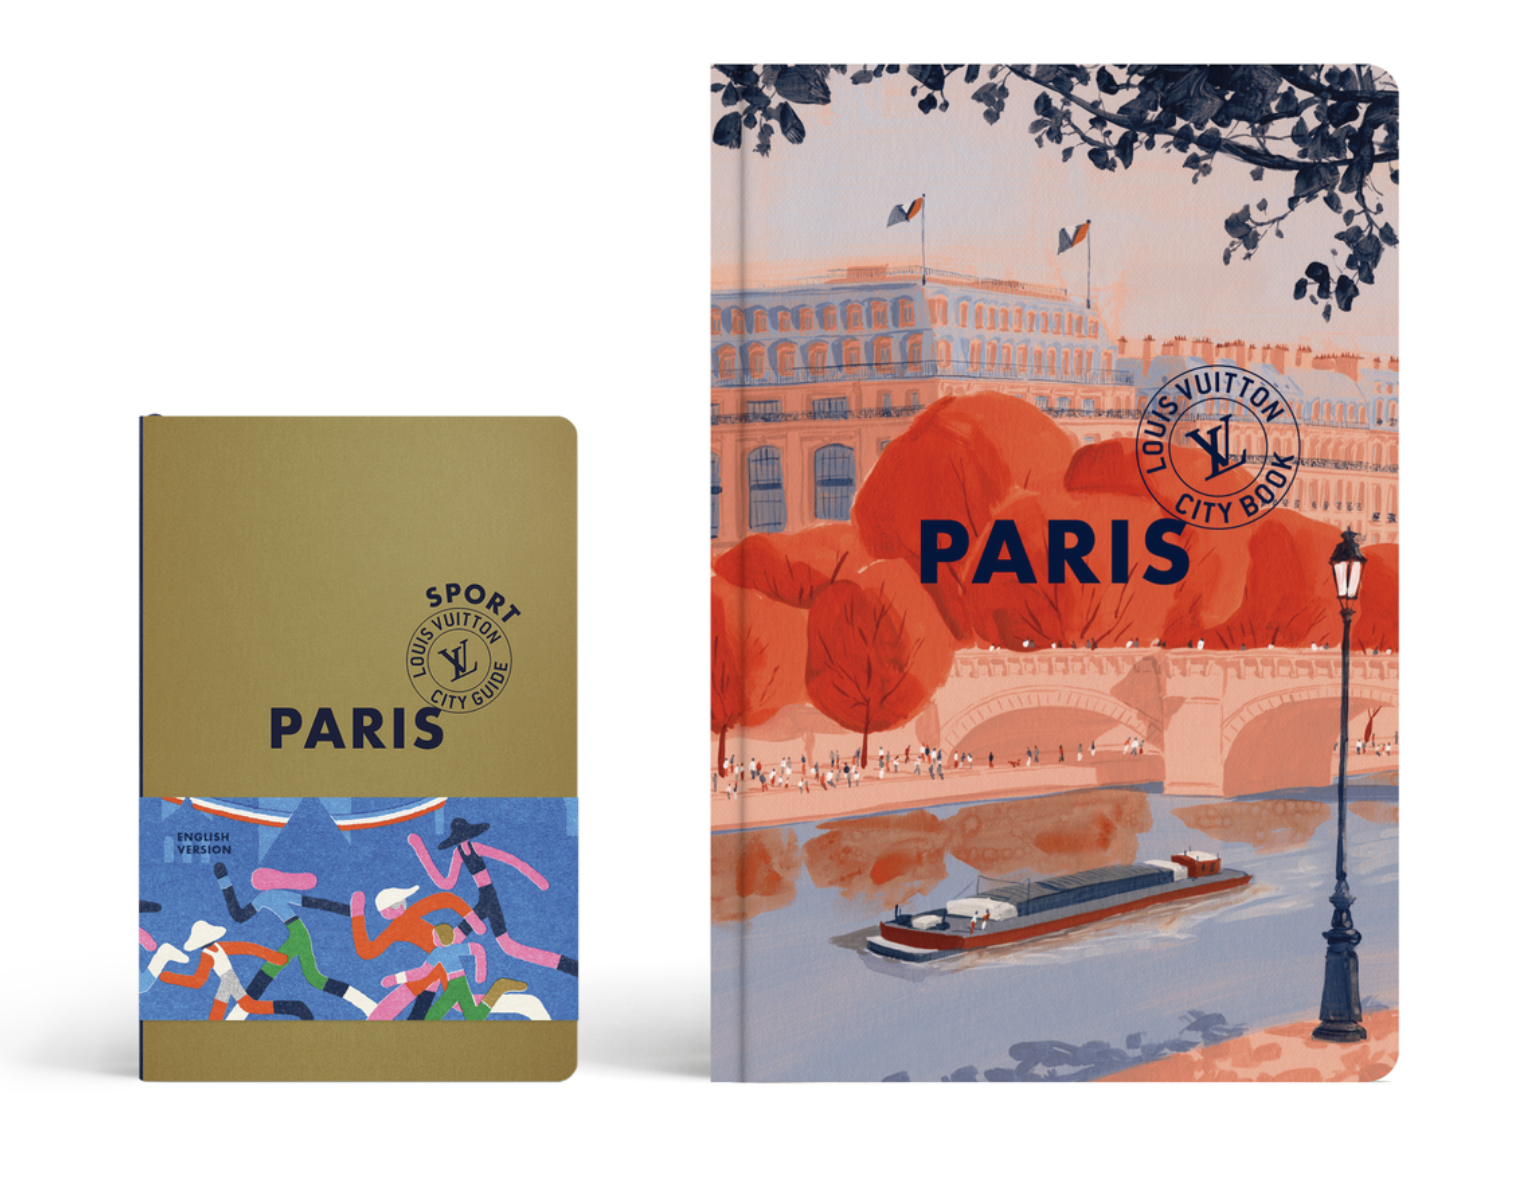 路易威登推出奥运特别限量版《巴黎城市指南》套装